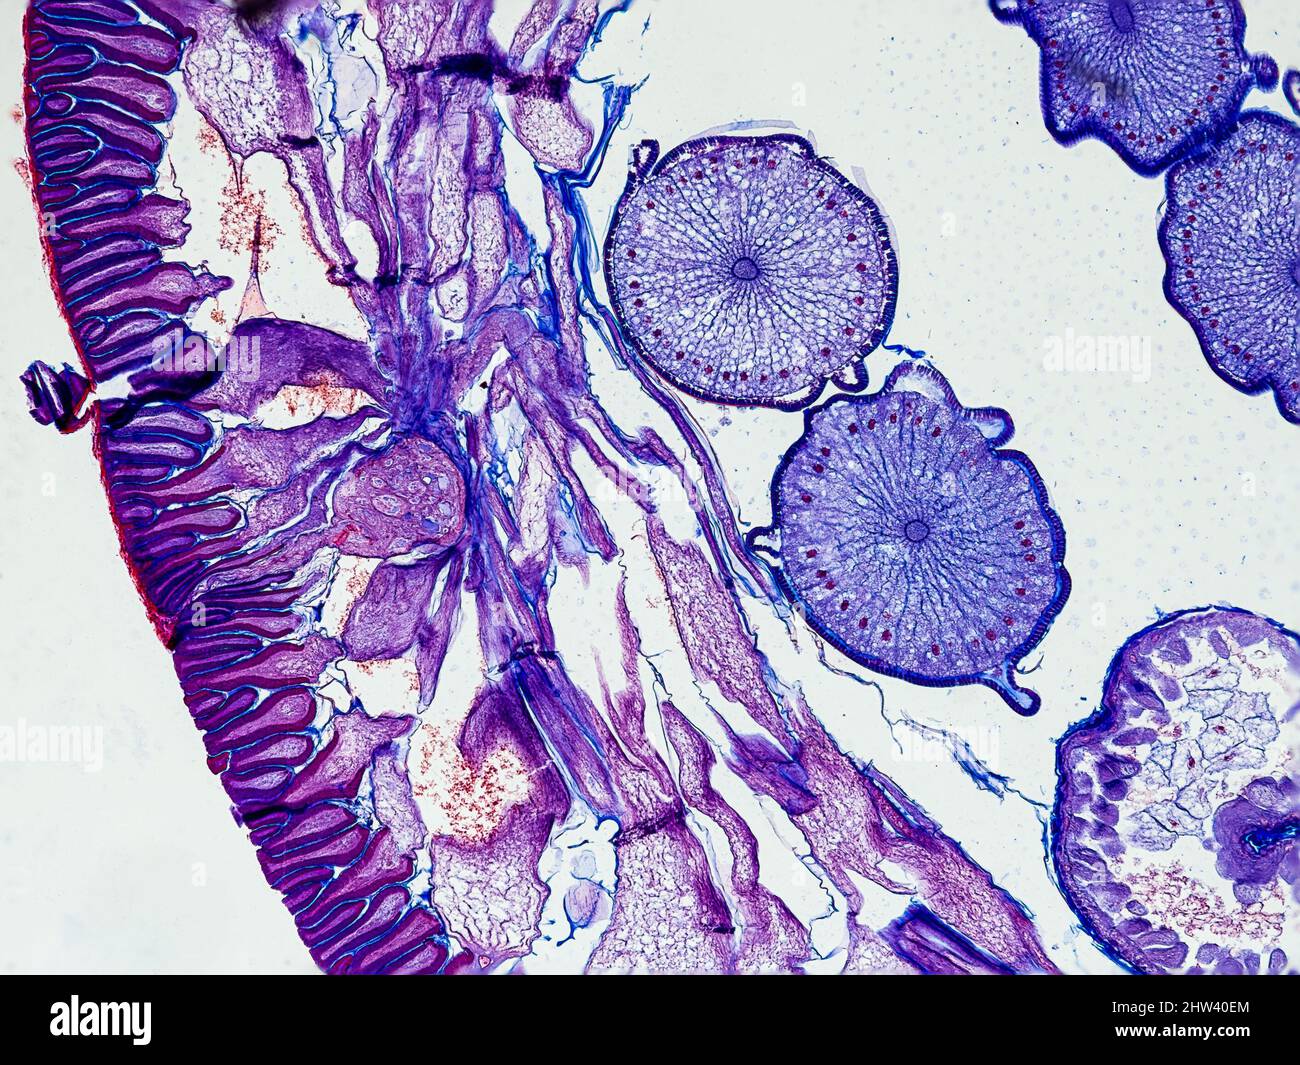 ascaris megalocephala sezione trasversale sotto il microscopio che mostra il suo cuticolo, cellule mesodermiche, pseudoceloma e ovaie - microscopio ottico x100 mag Foto Stock